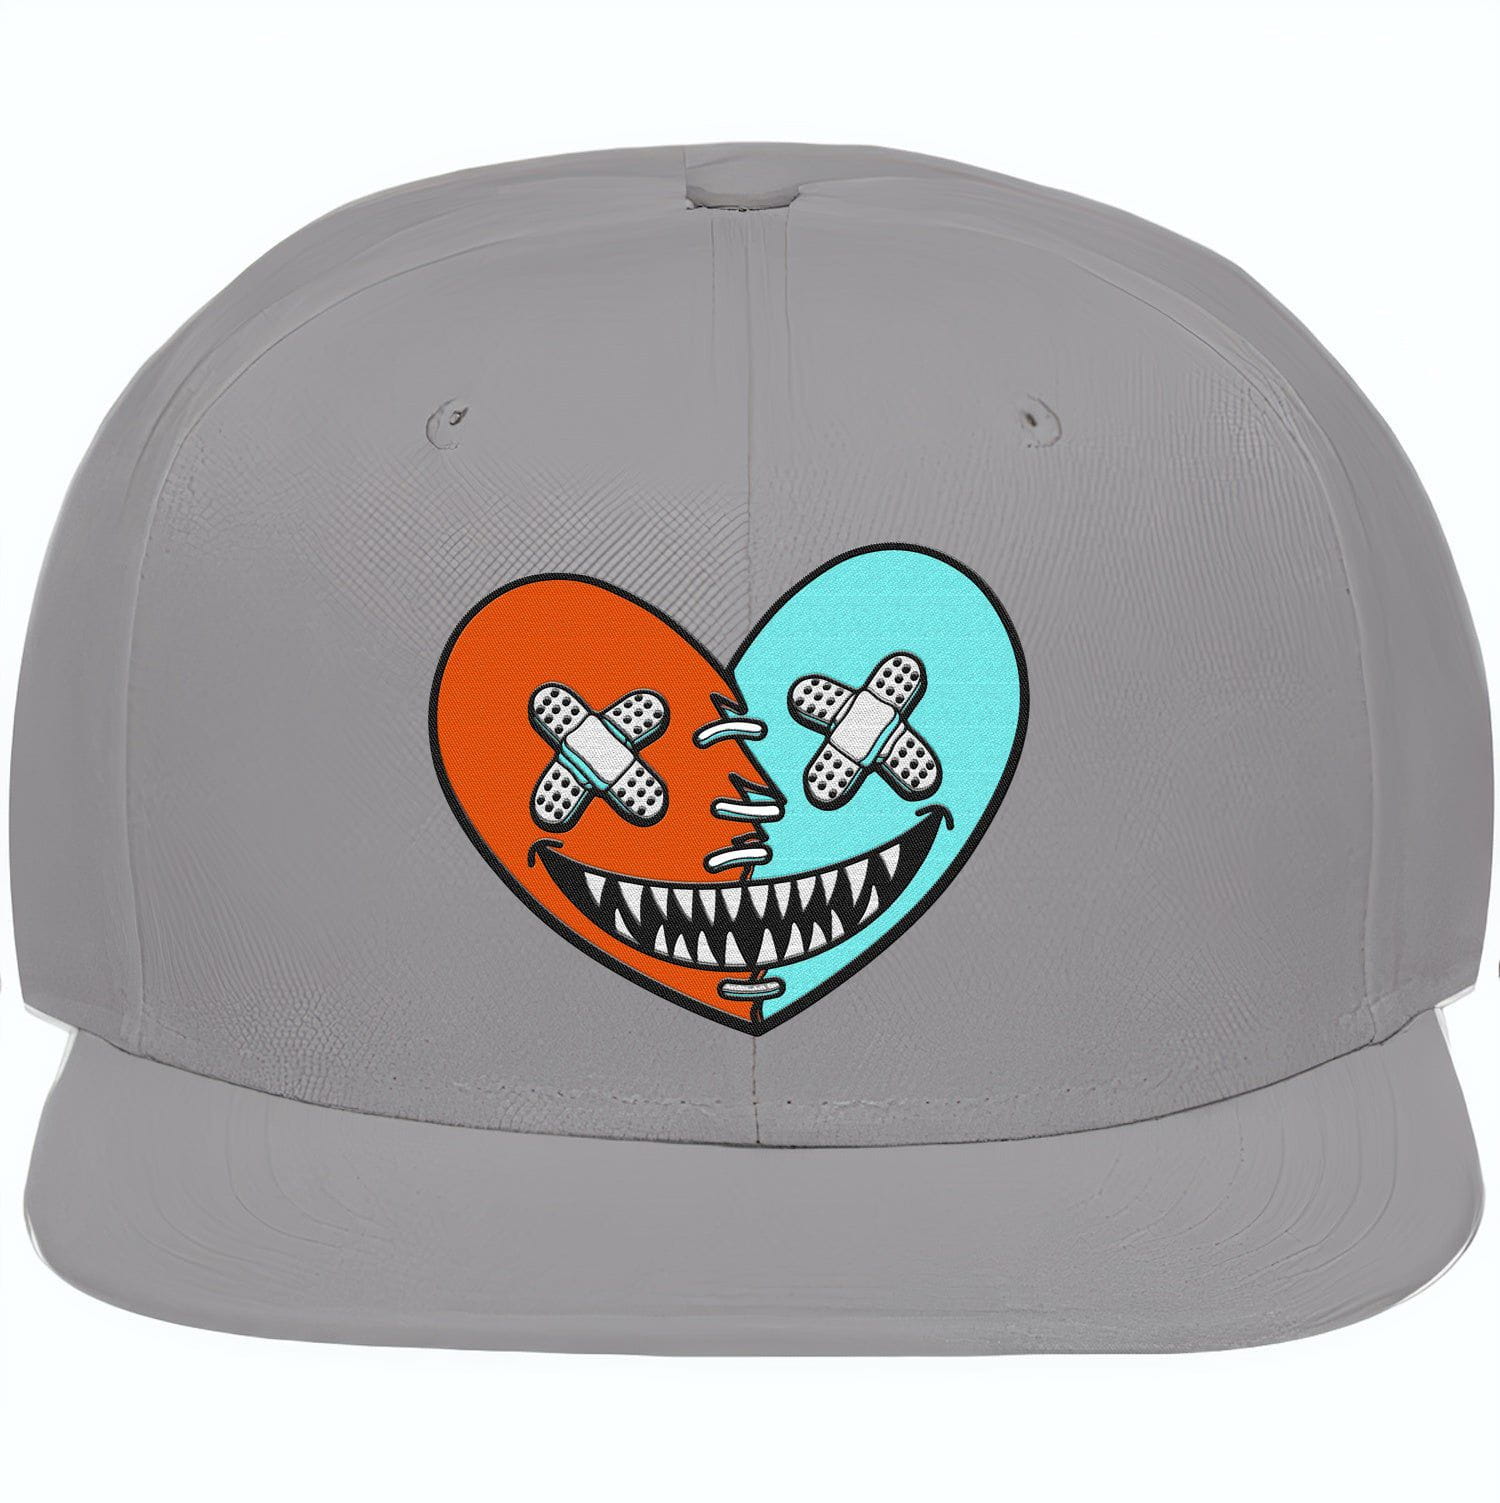 Miami Dolphin Dunks Snapback Hats - Miami Heart Baws